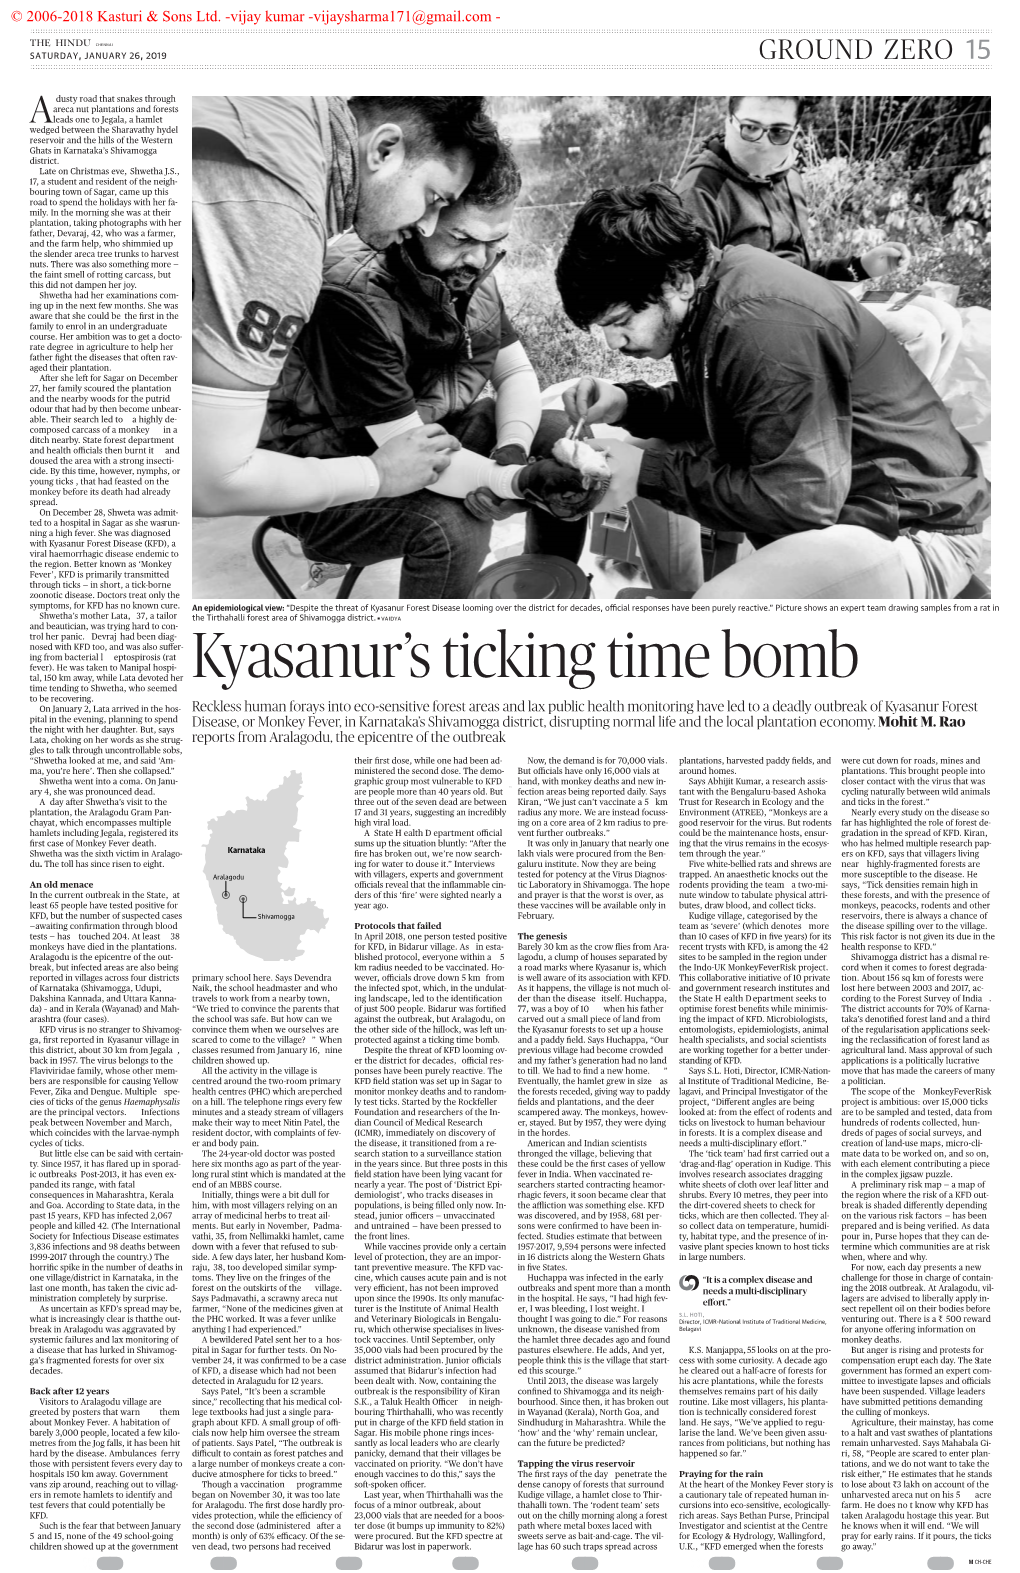 Kyasanur's Ticking Time Bomb